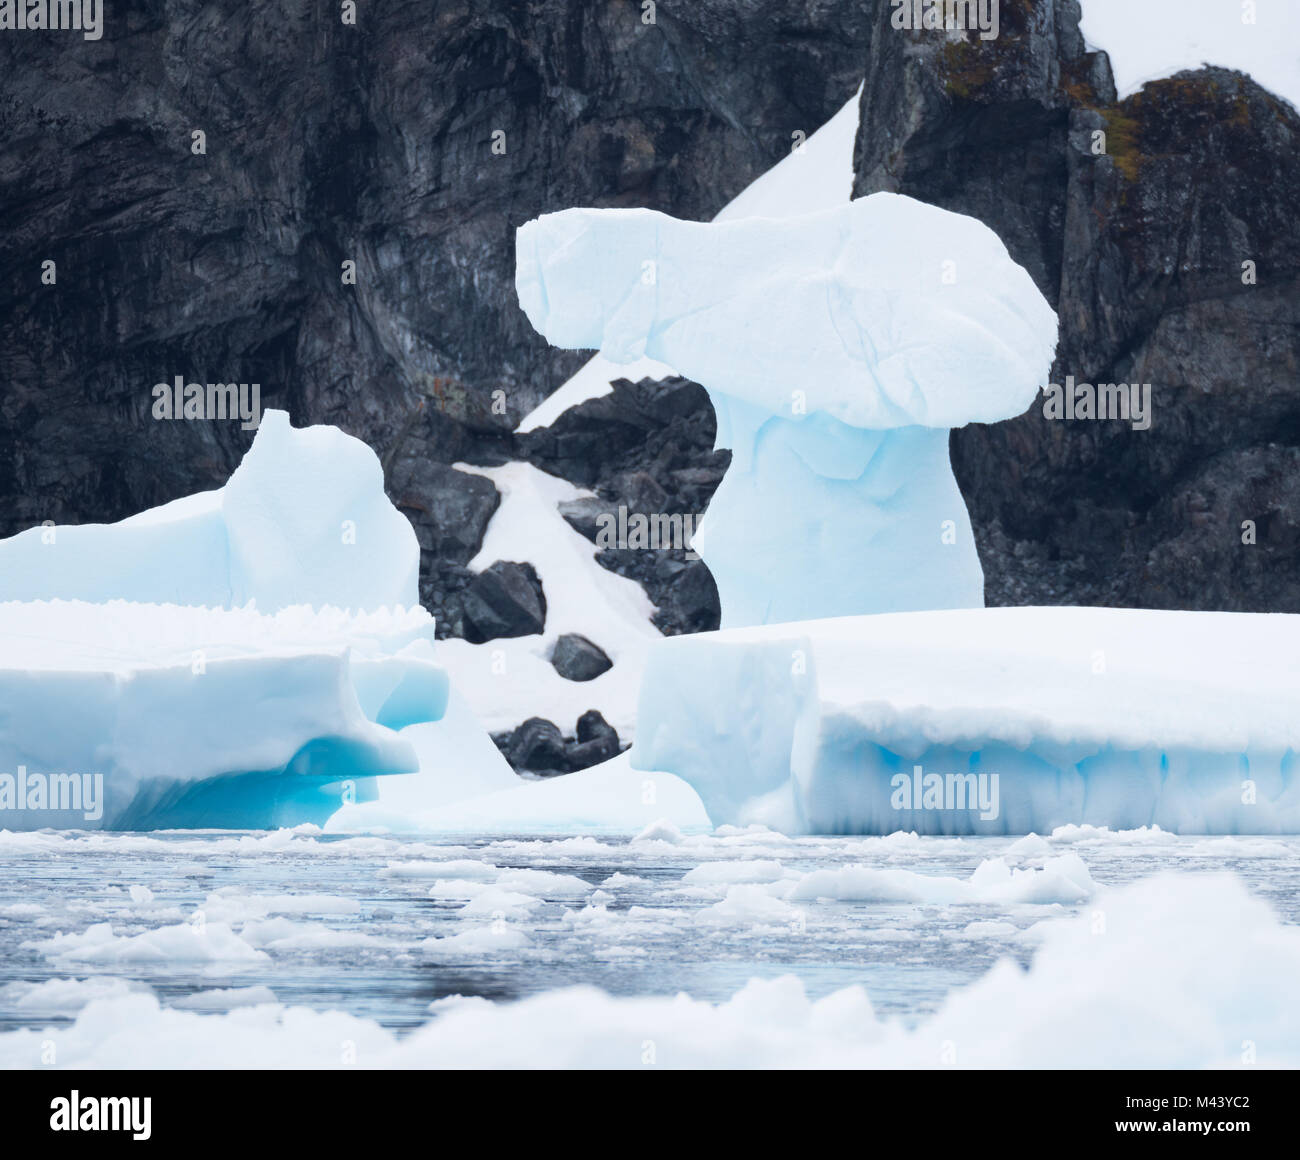 Une étrange formation de glace sur un iceberg bleu clair avec les rochers escarpés de l'Antarctique dans l'arrière-plan. Photographié dans Cierva Cove. Banque D'Images